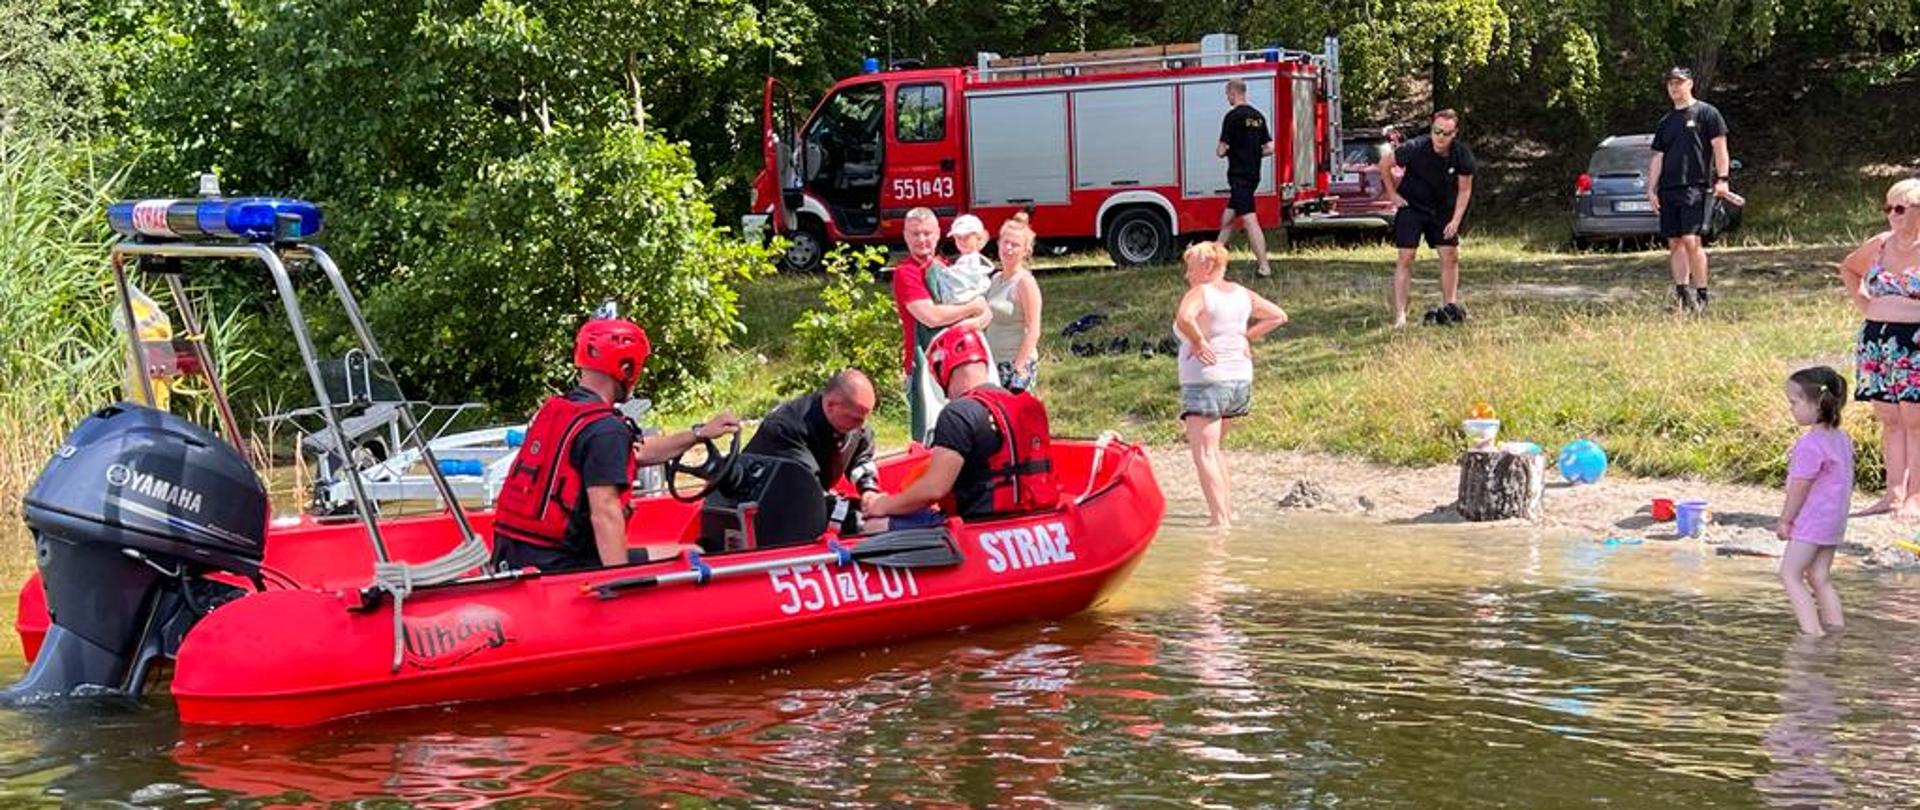 Zdjęcie przedstawia jezioro oraz czerwoną łódź ratowniczą na której ćwiczą strażacy.